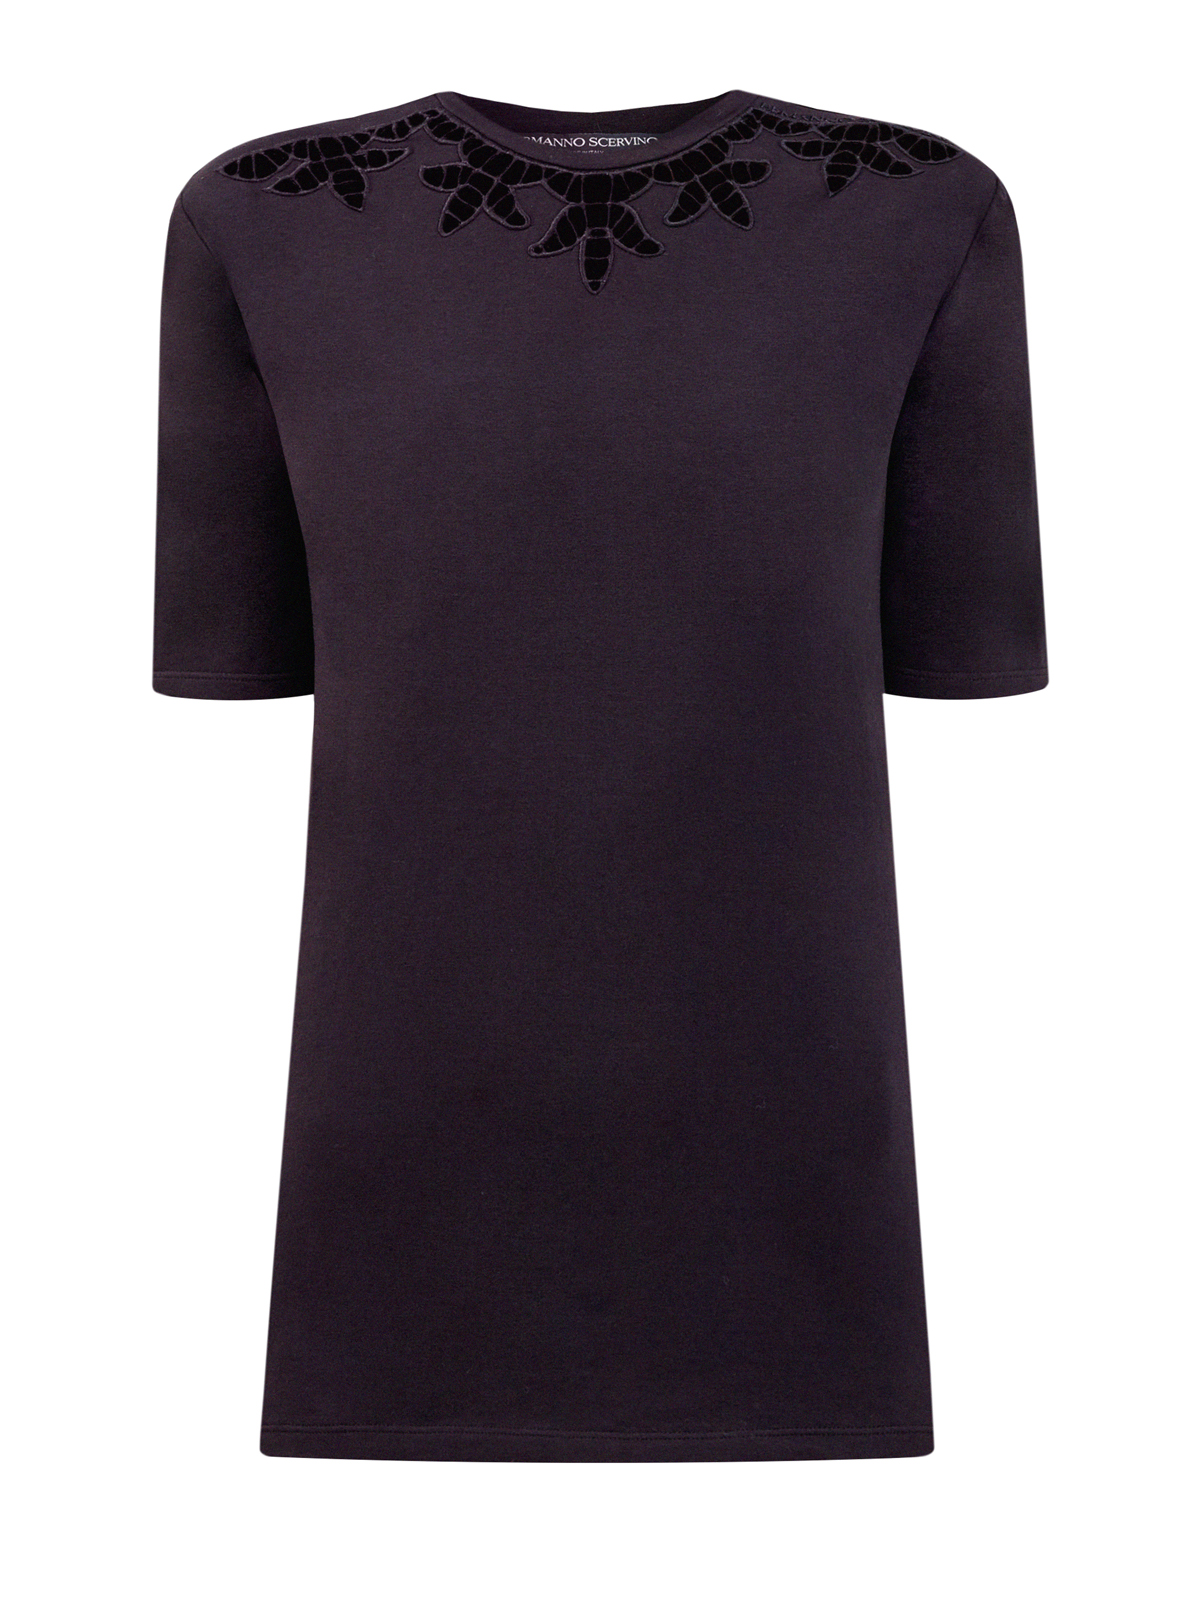 Однотонная футболка приталенного кроя с вышивкой ERMANNO SCERVINO, цвет черный, размер 44;46;42 - фото 1